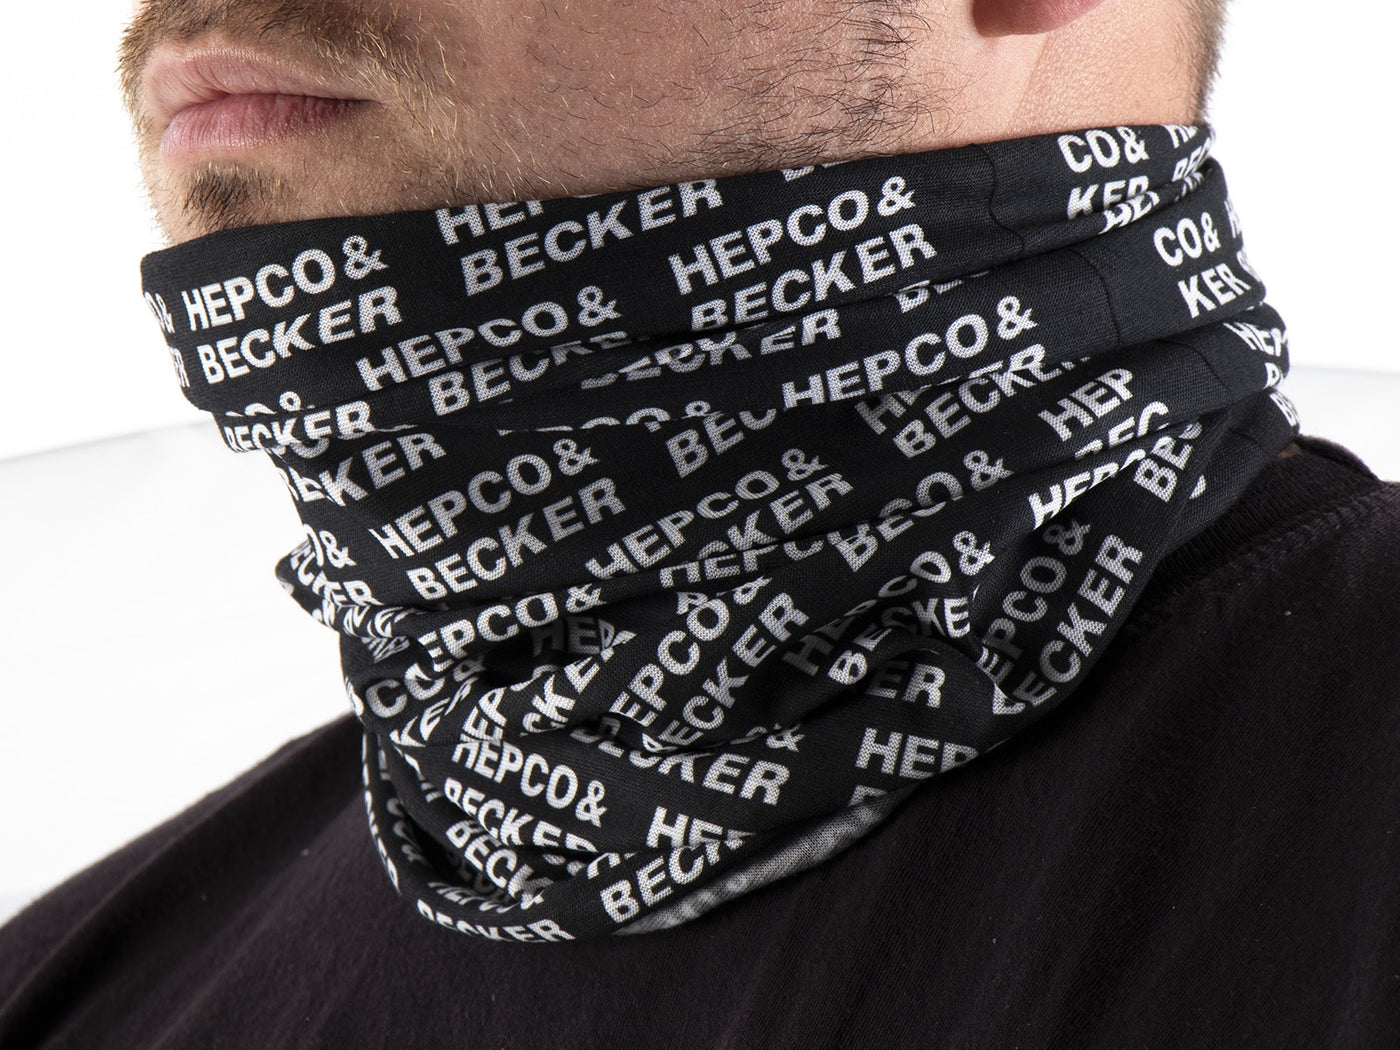 Hepco & Becker Multifunctional Headwear